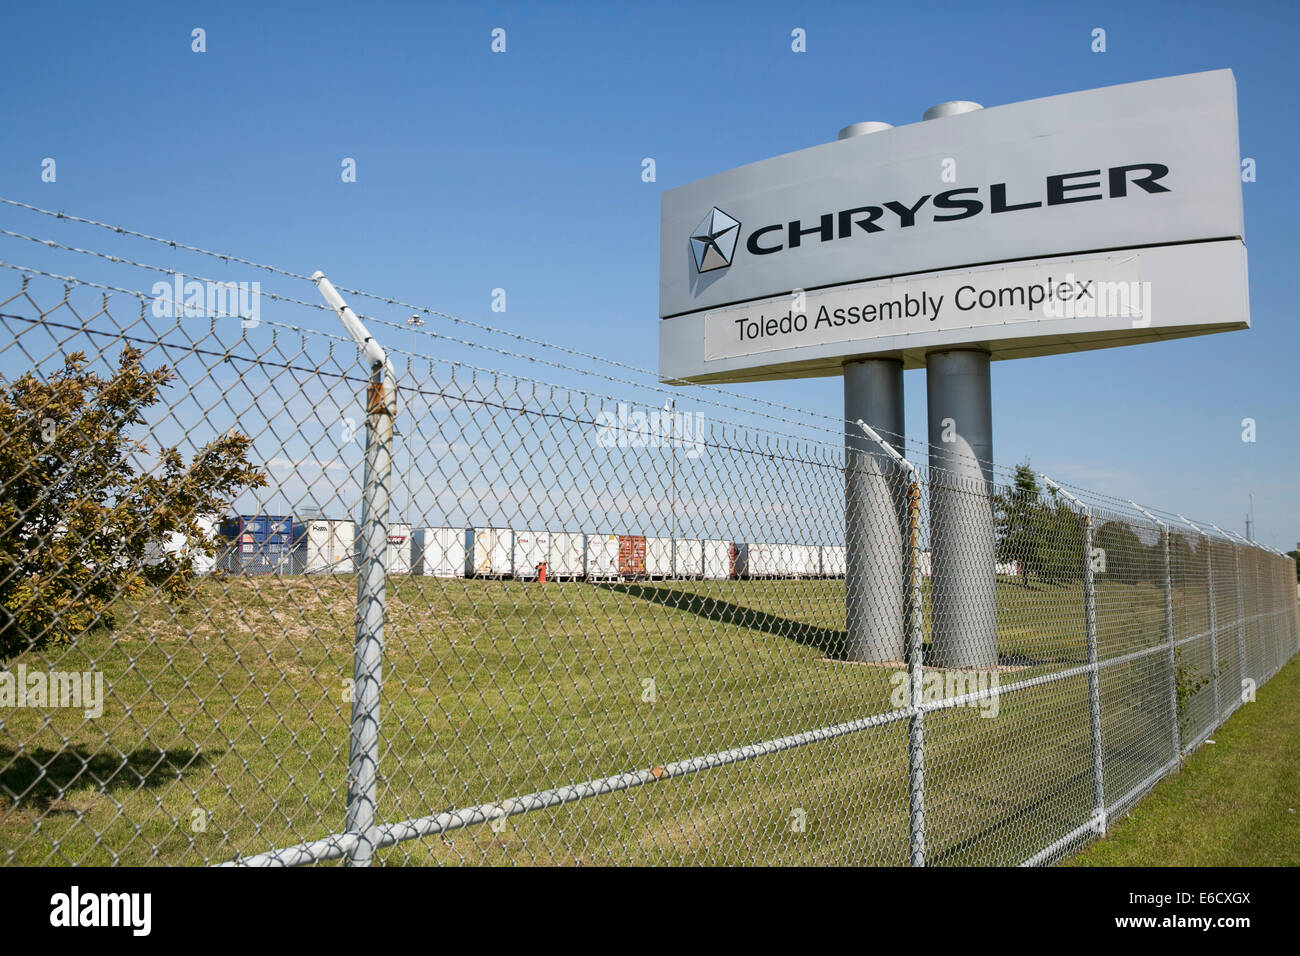 La Chrysler Toledo insieme complesso di Toledo, Ohio. Il sito di produzione di veicoli Jeep. Foto Stock